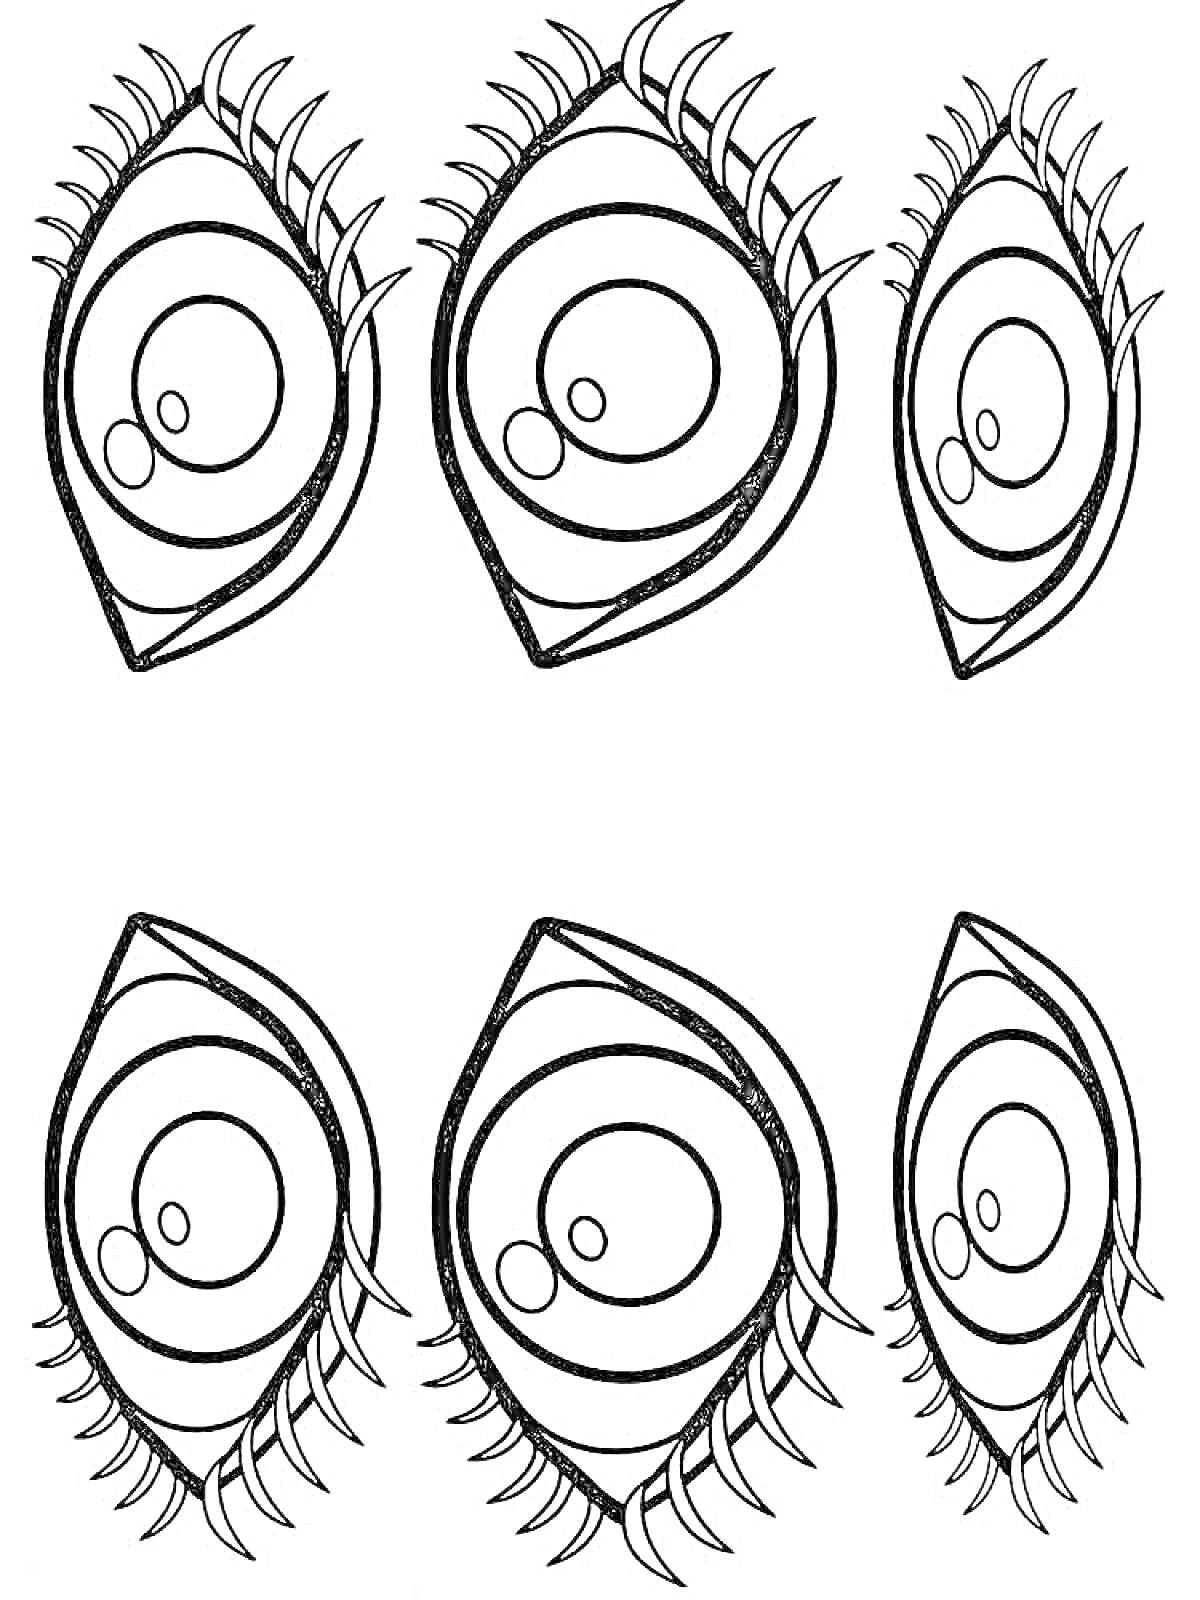 Пять глаз с ресницами, два больших глаза и три маленьких глаза, рисунок контурный